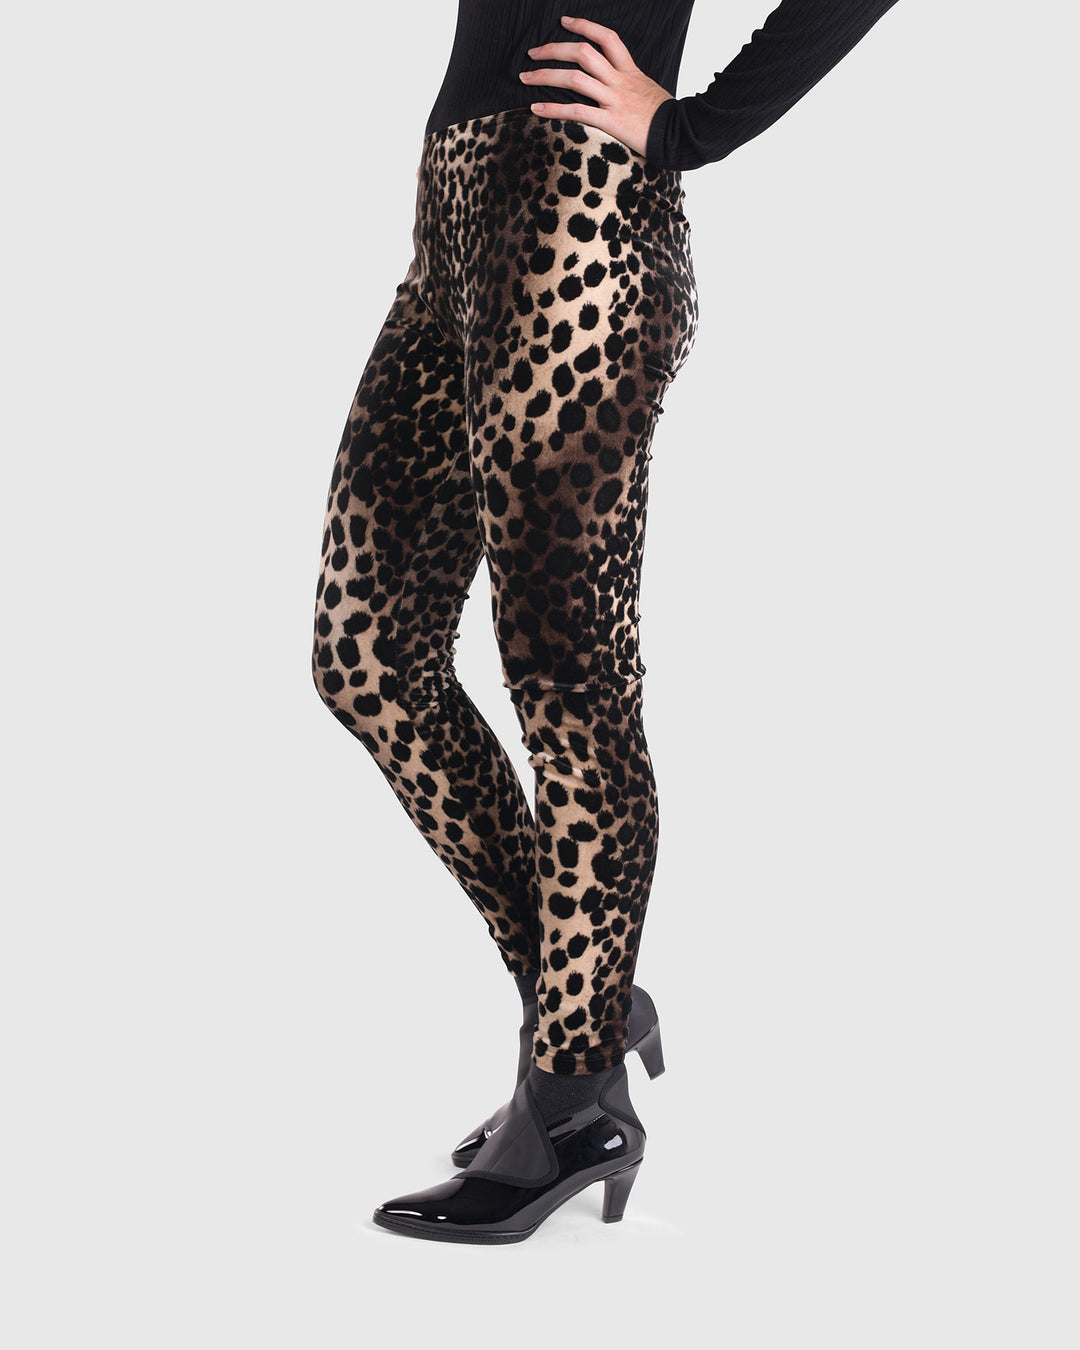 Nala Velvet Leggings, Leopard